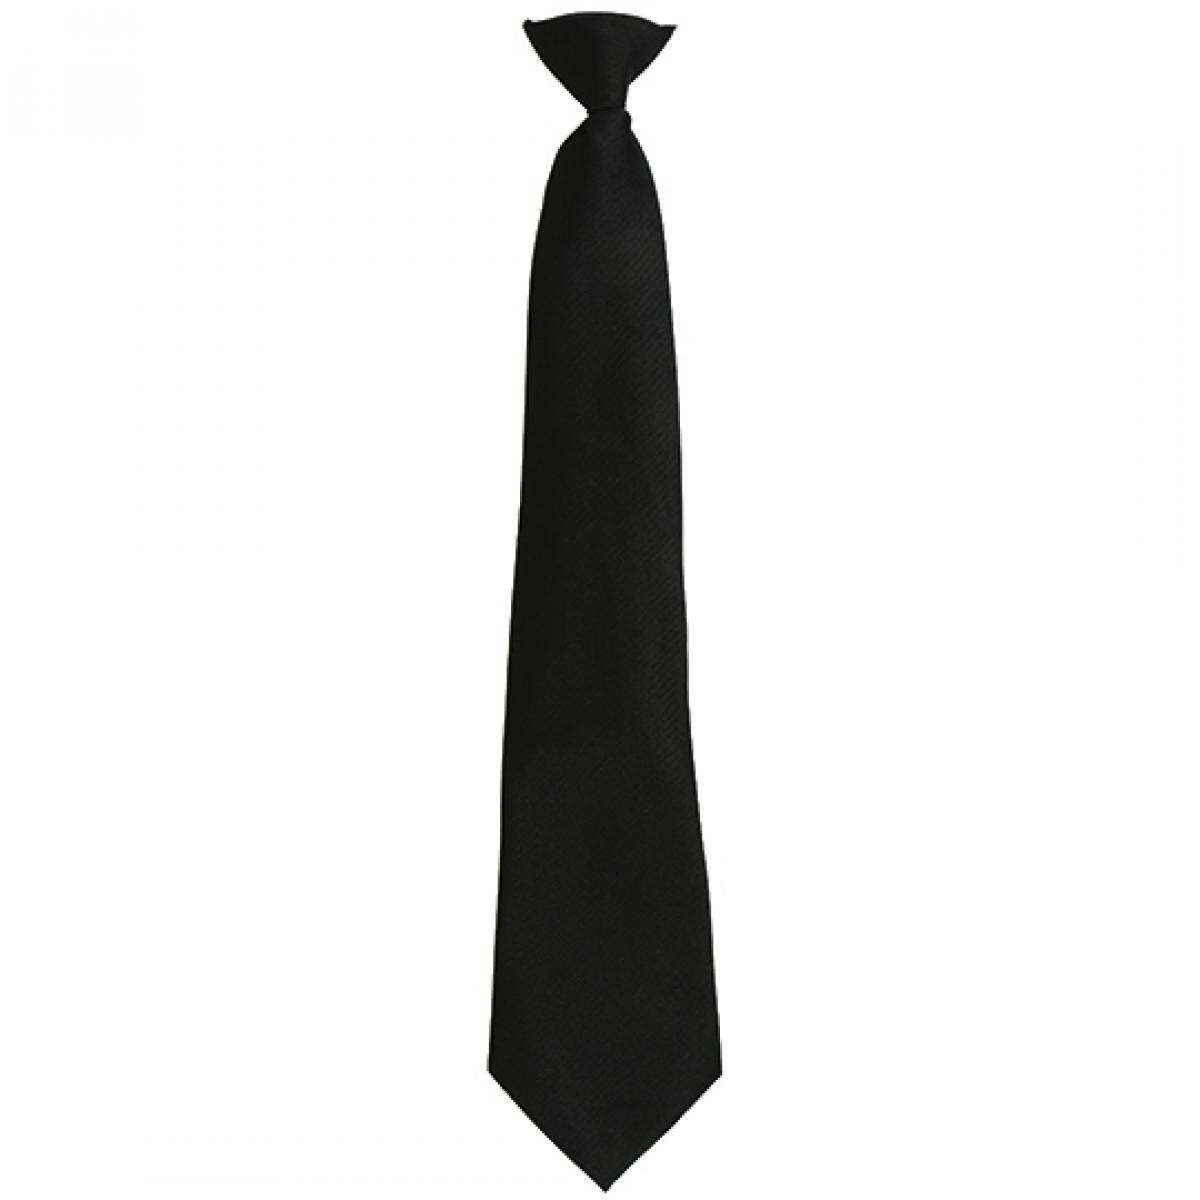 Hersteller: Premier Workwear Herstellernummer: PR785 Artikelbezeichnung: ´Colours´ Fashion Clip Tie Farbe: Black